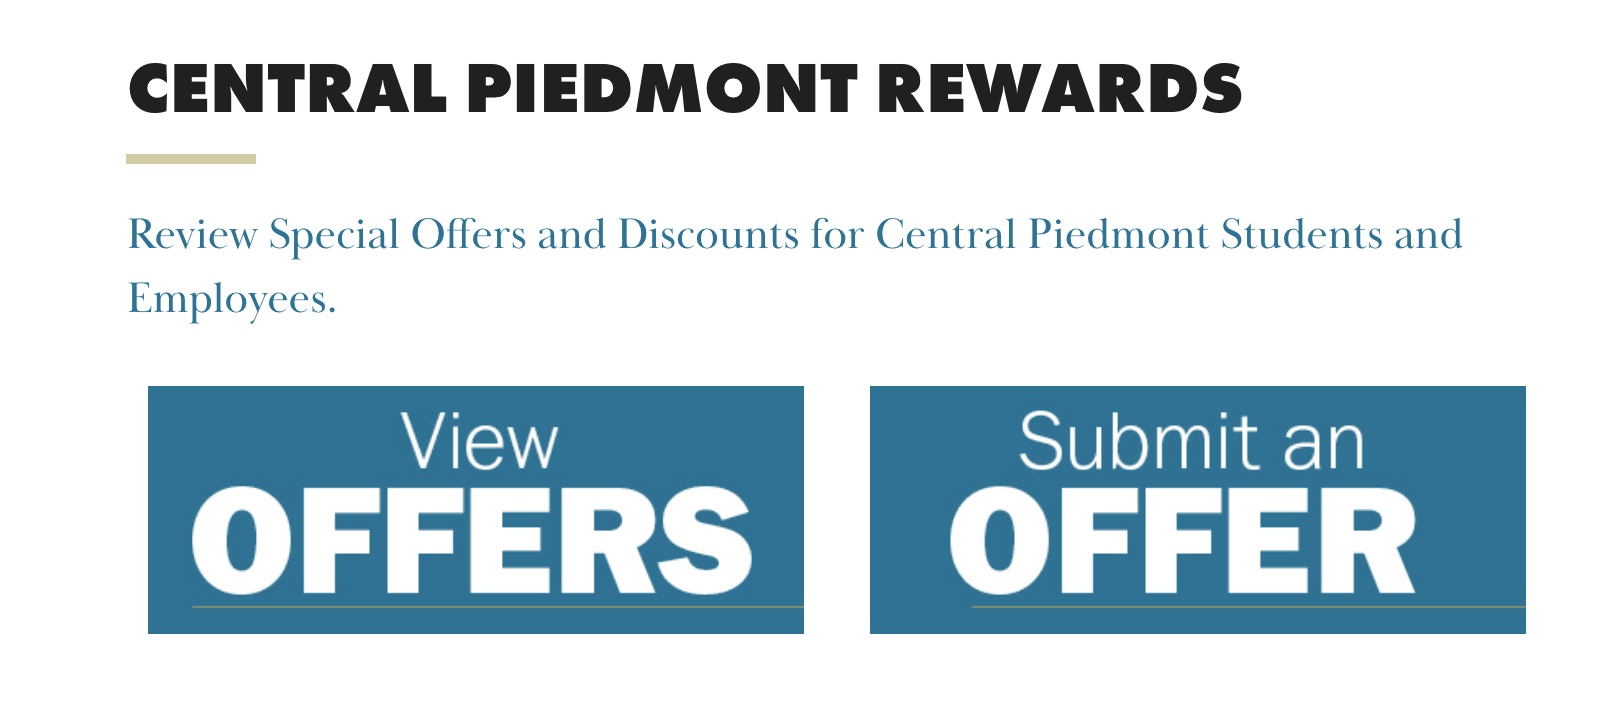 Central Piedmont Rewards